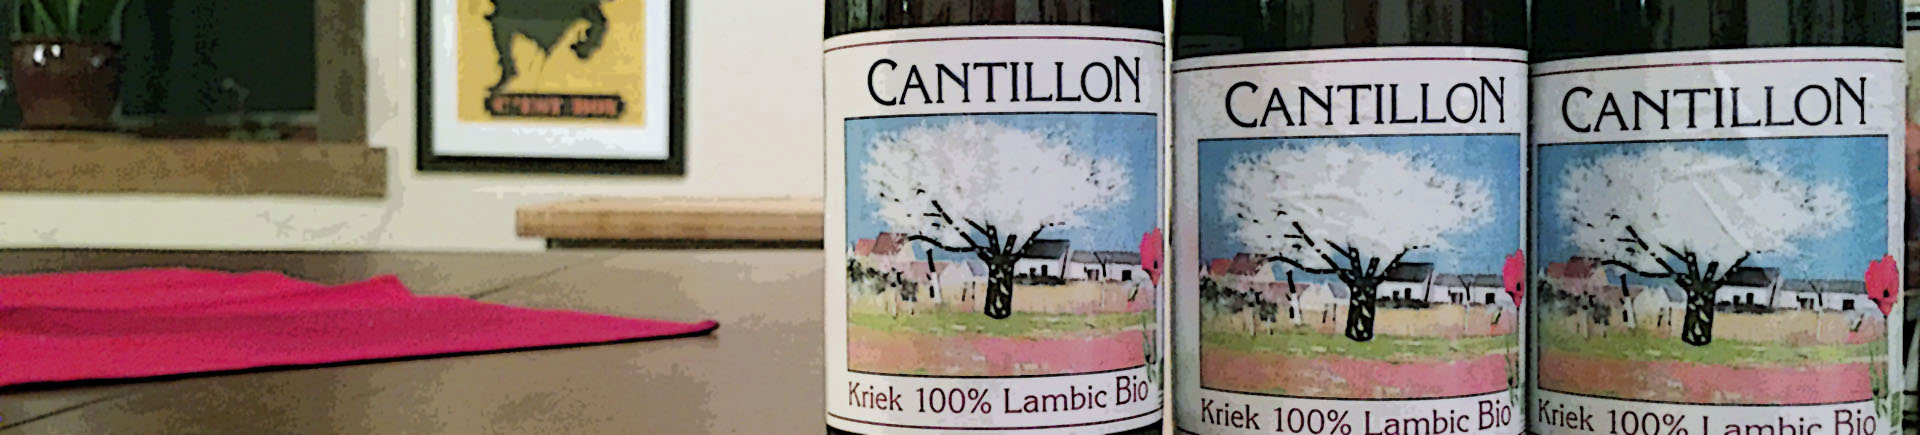 Cantillon Kriek Header 2